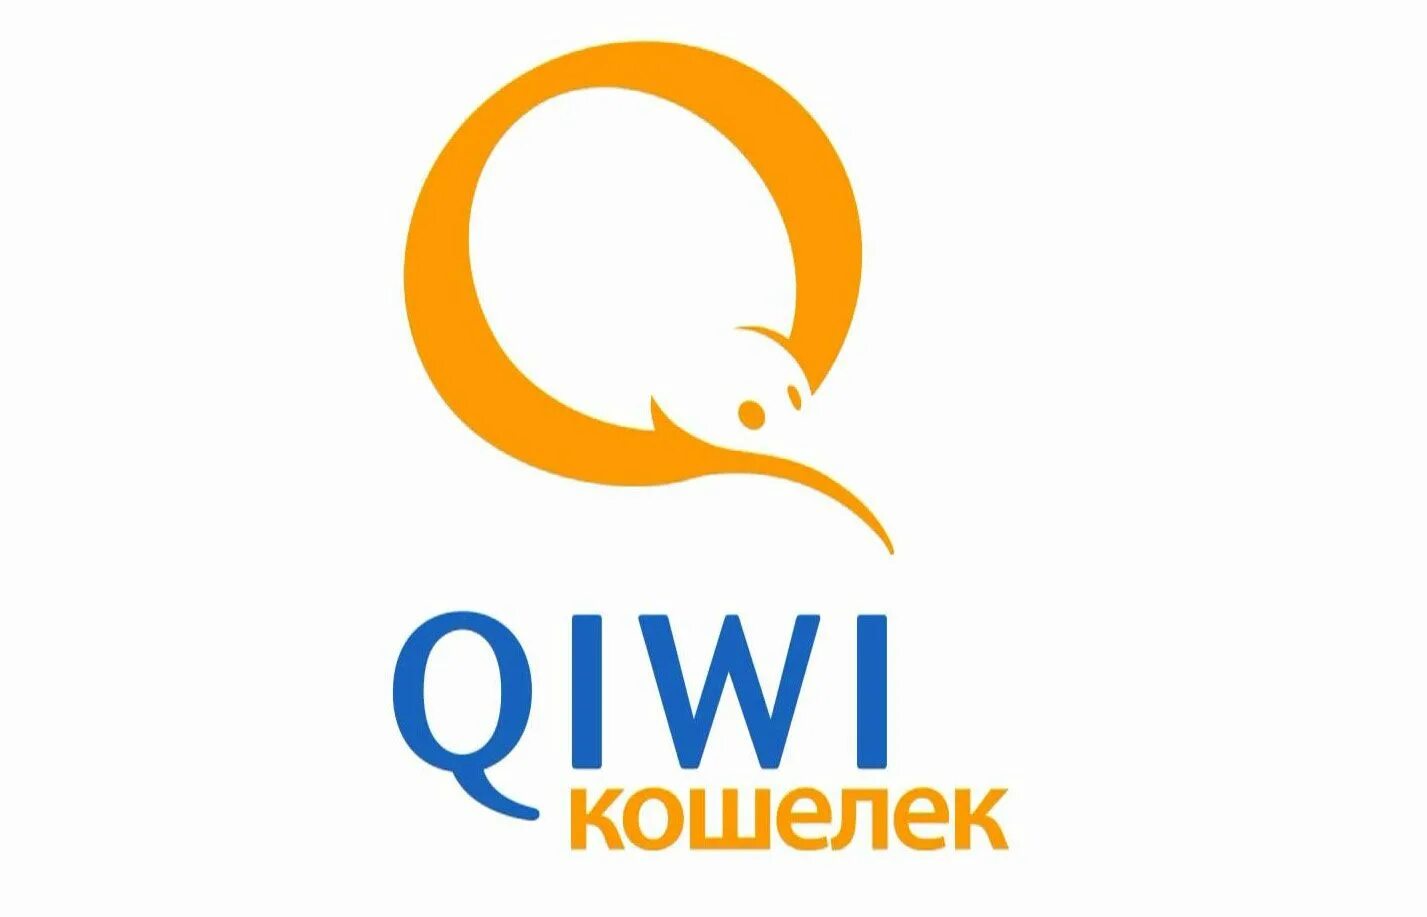 Qiwi чья компания. QIWI логотип. QIWI кошелек. Иконка киви кошелька. Qiqi.